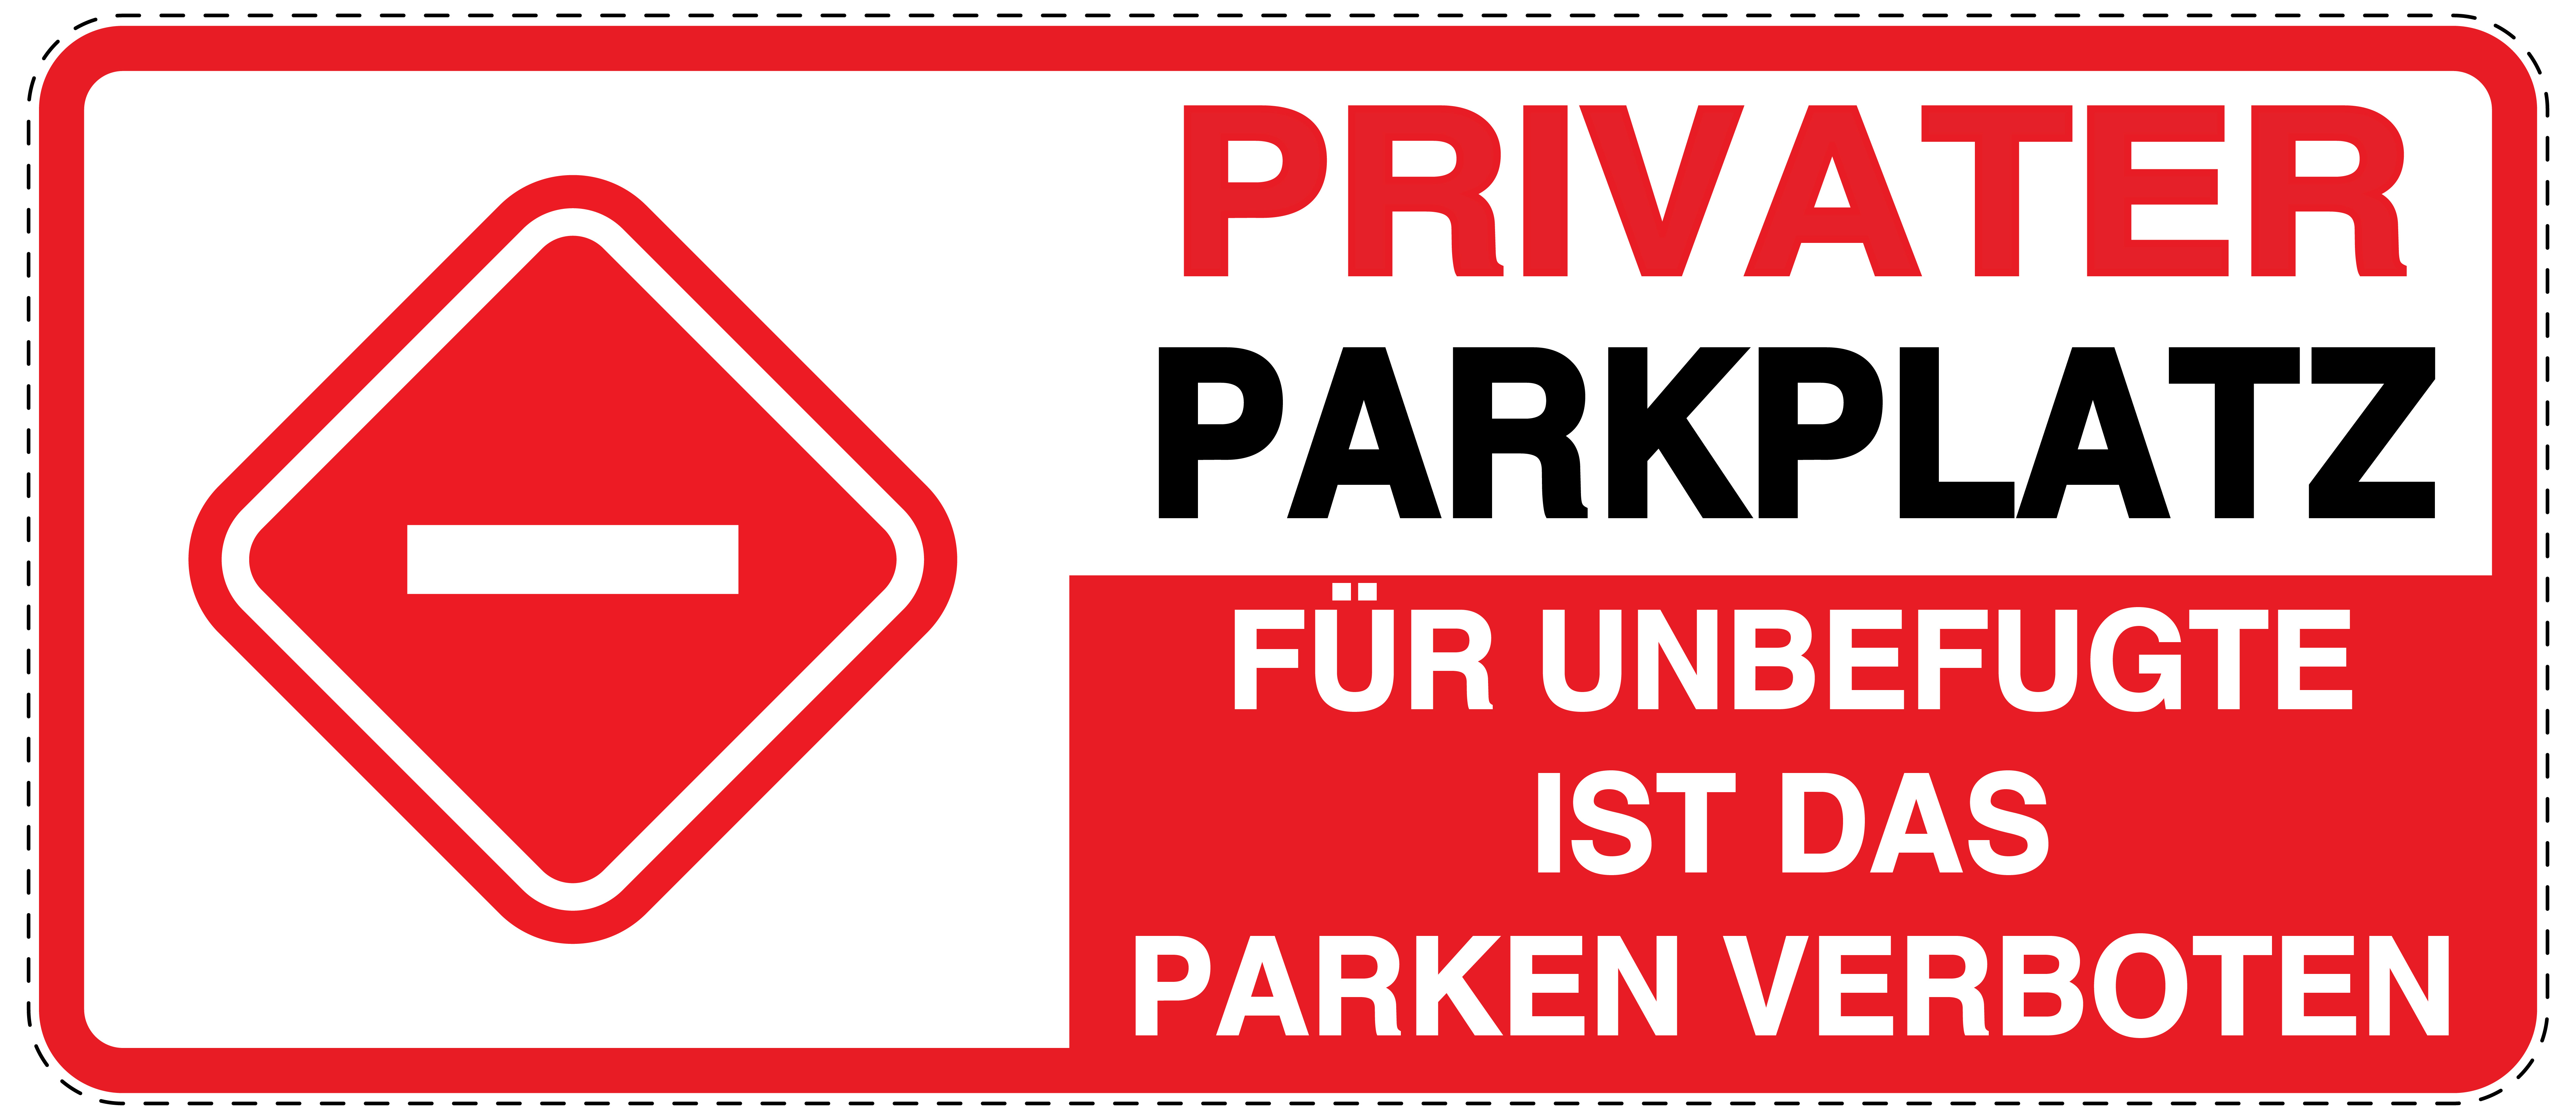 Für unbefugte parken verboten Aufkleber 30x20cm